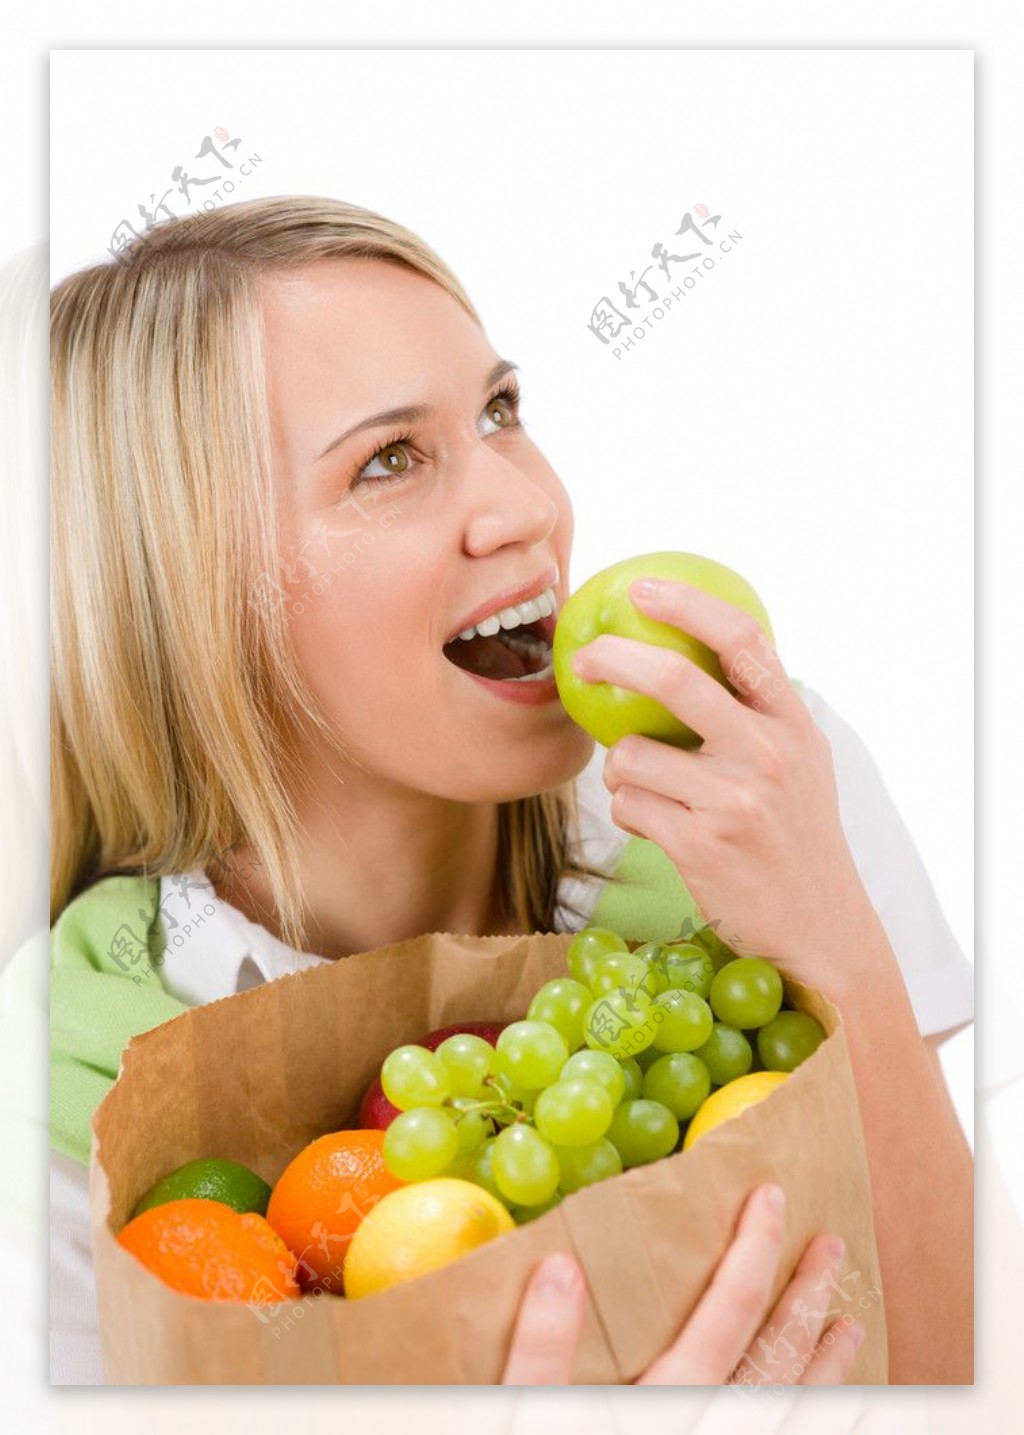 抱着购物袋吃水果的美女图片